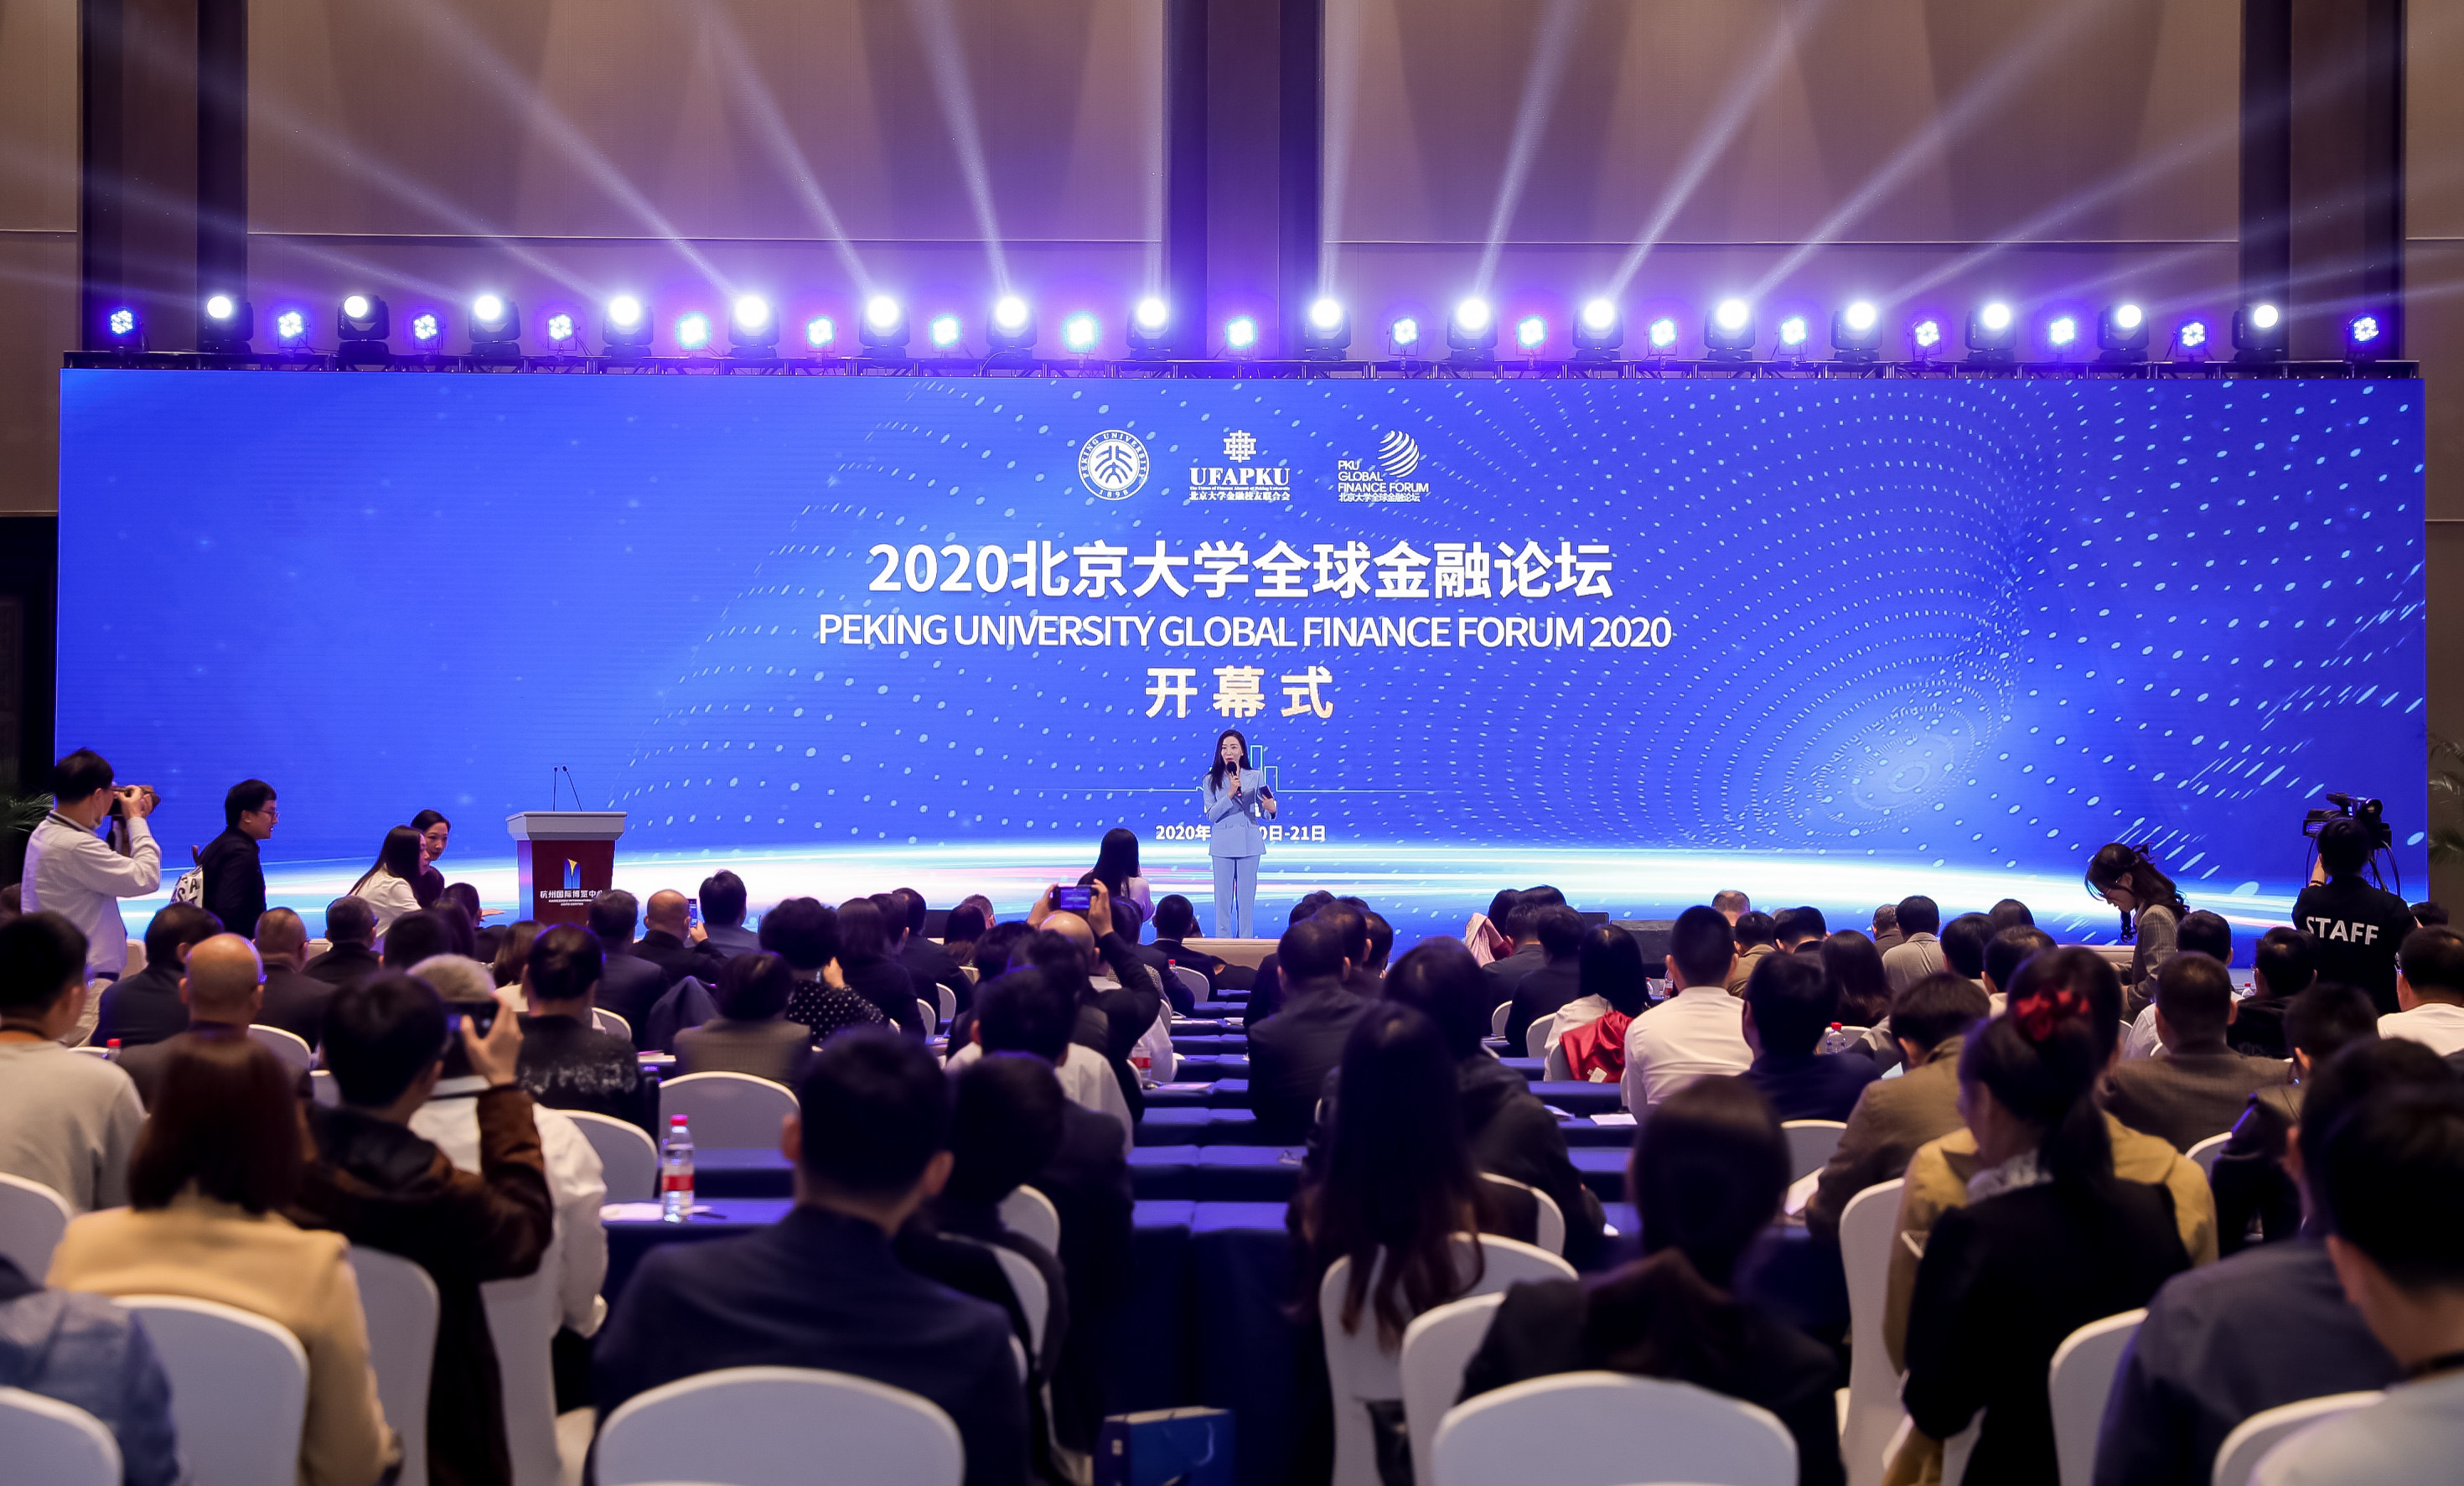 2020北京大学全球金融论坛在杭州隆重举行